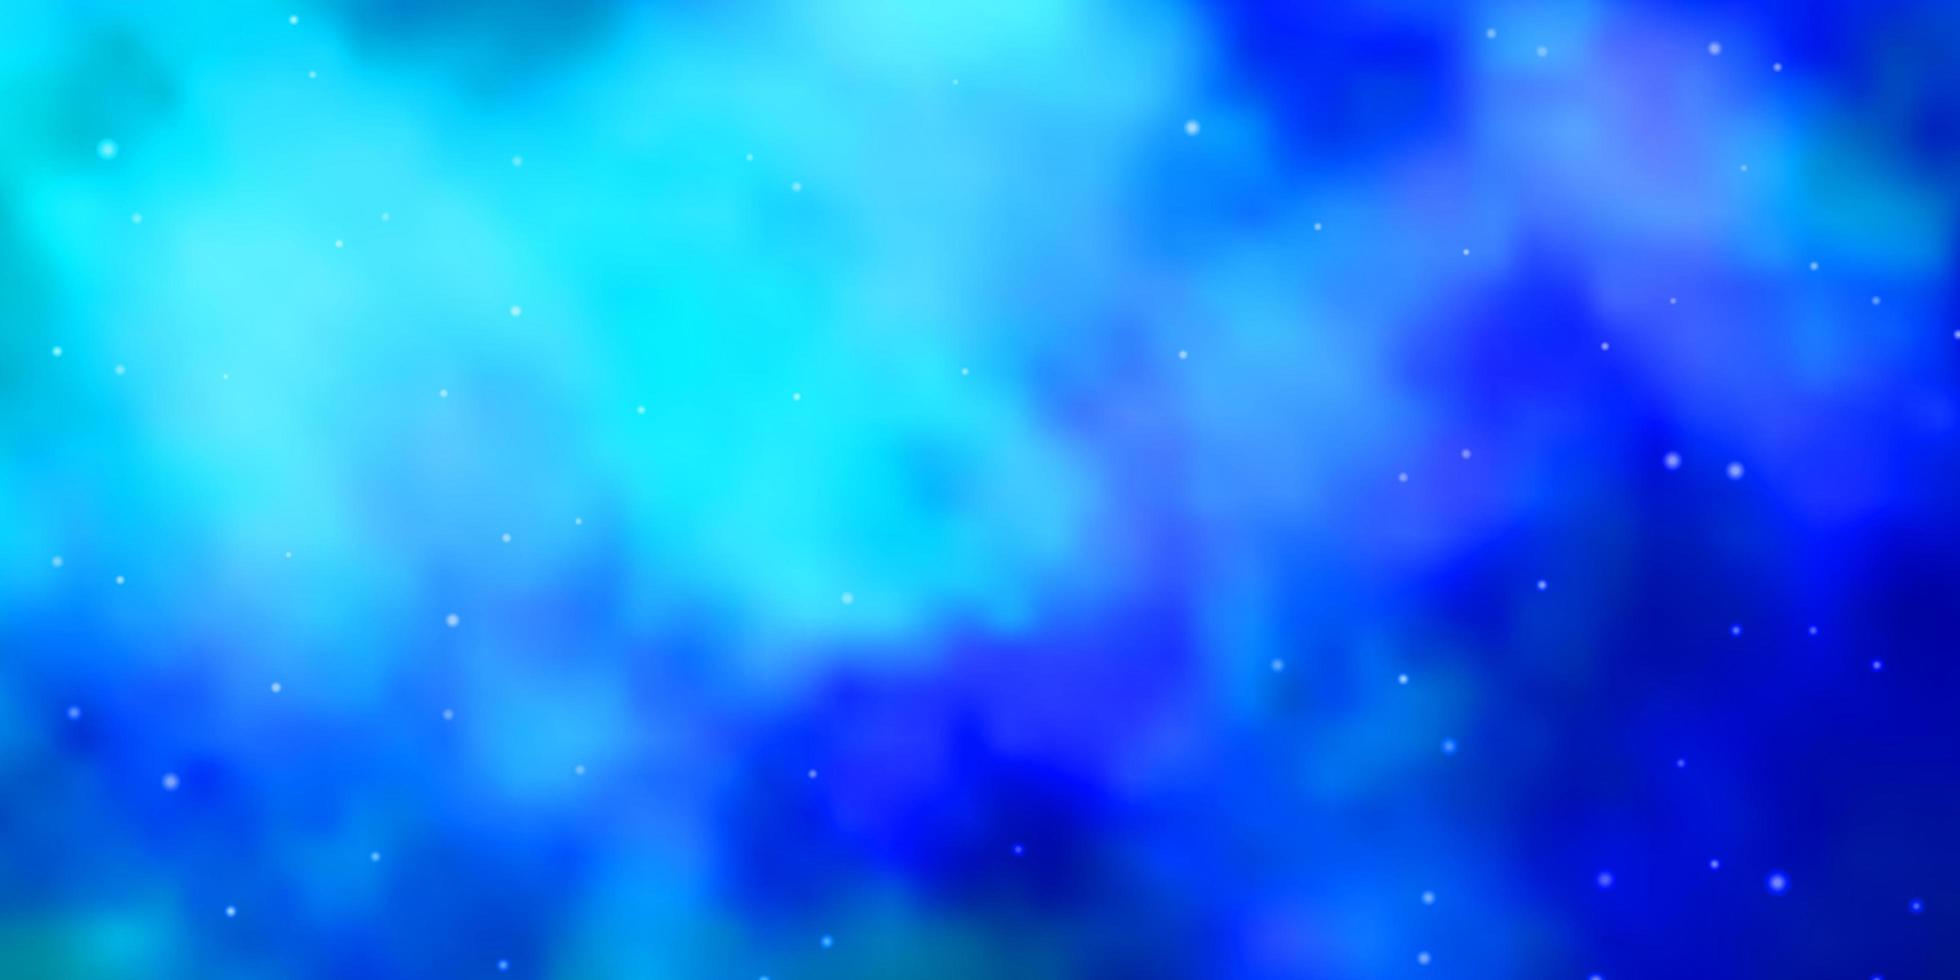 plantilla azul con estrellas. vector